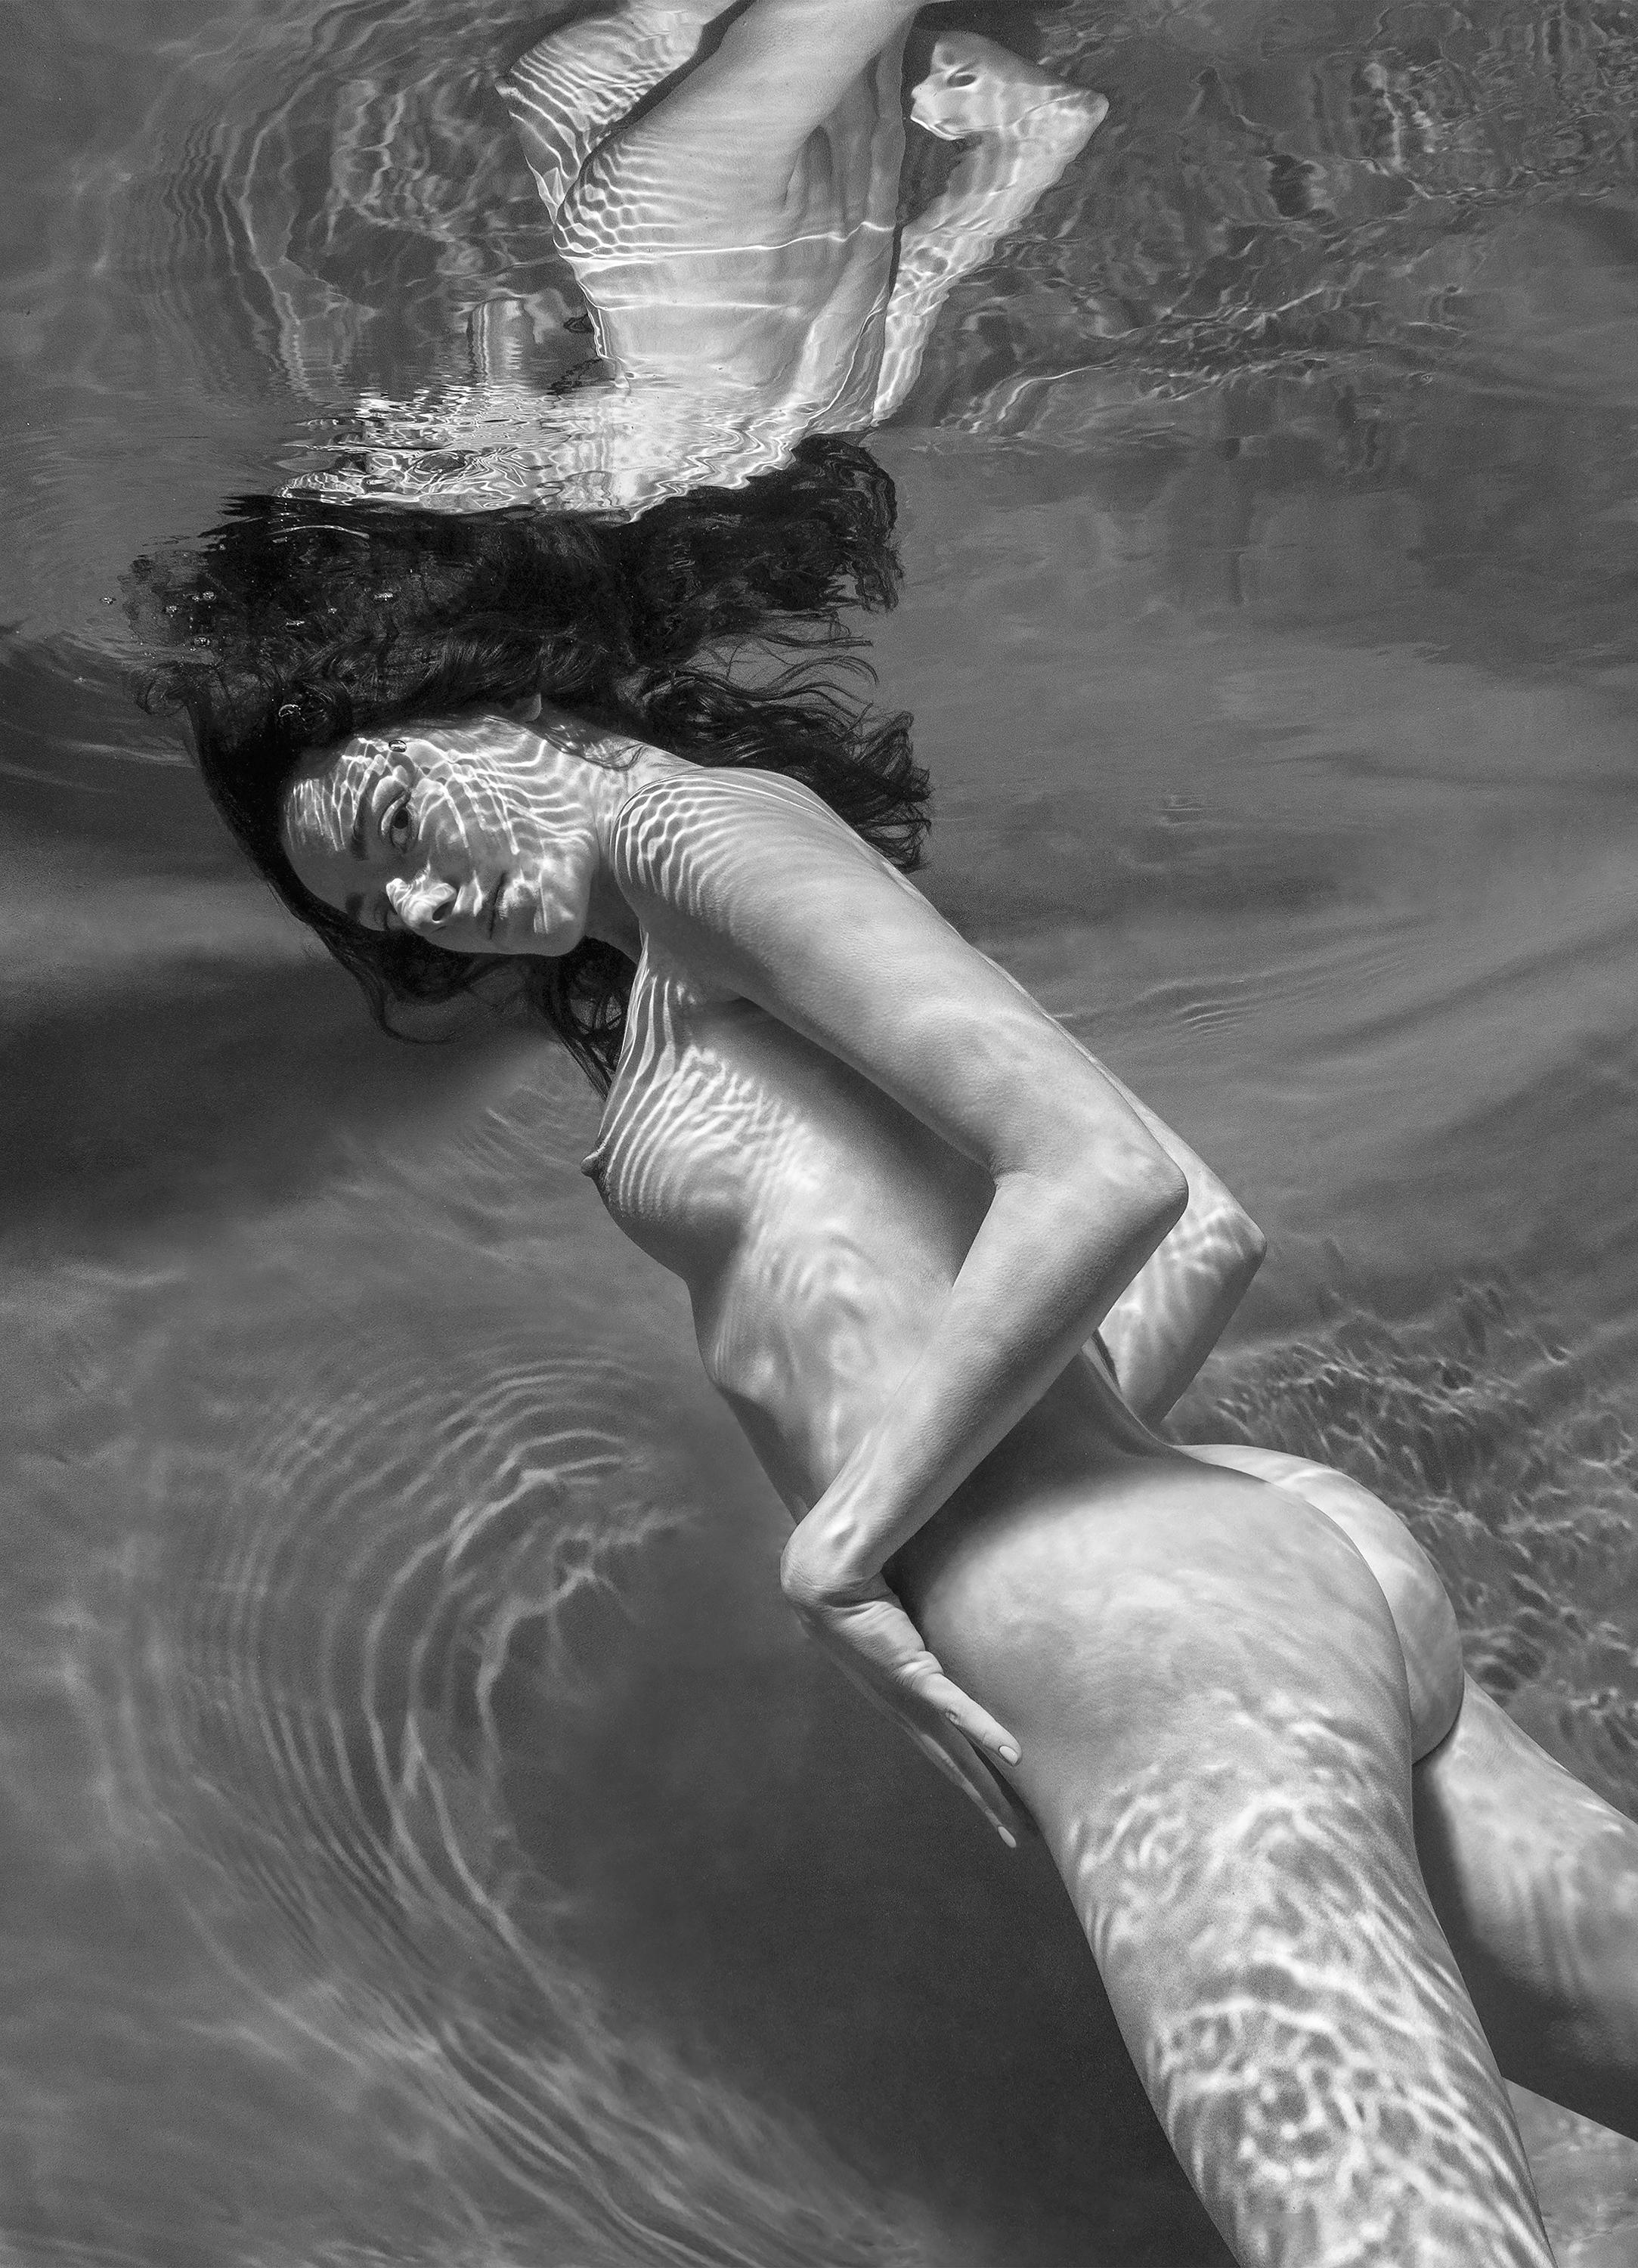 Alex Sher Black and White Photograph – Augen und Streifen - Unterwasser s/w Aktfotografie - Druck auf Aluminium 36х26"